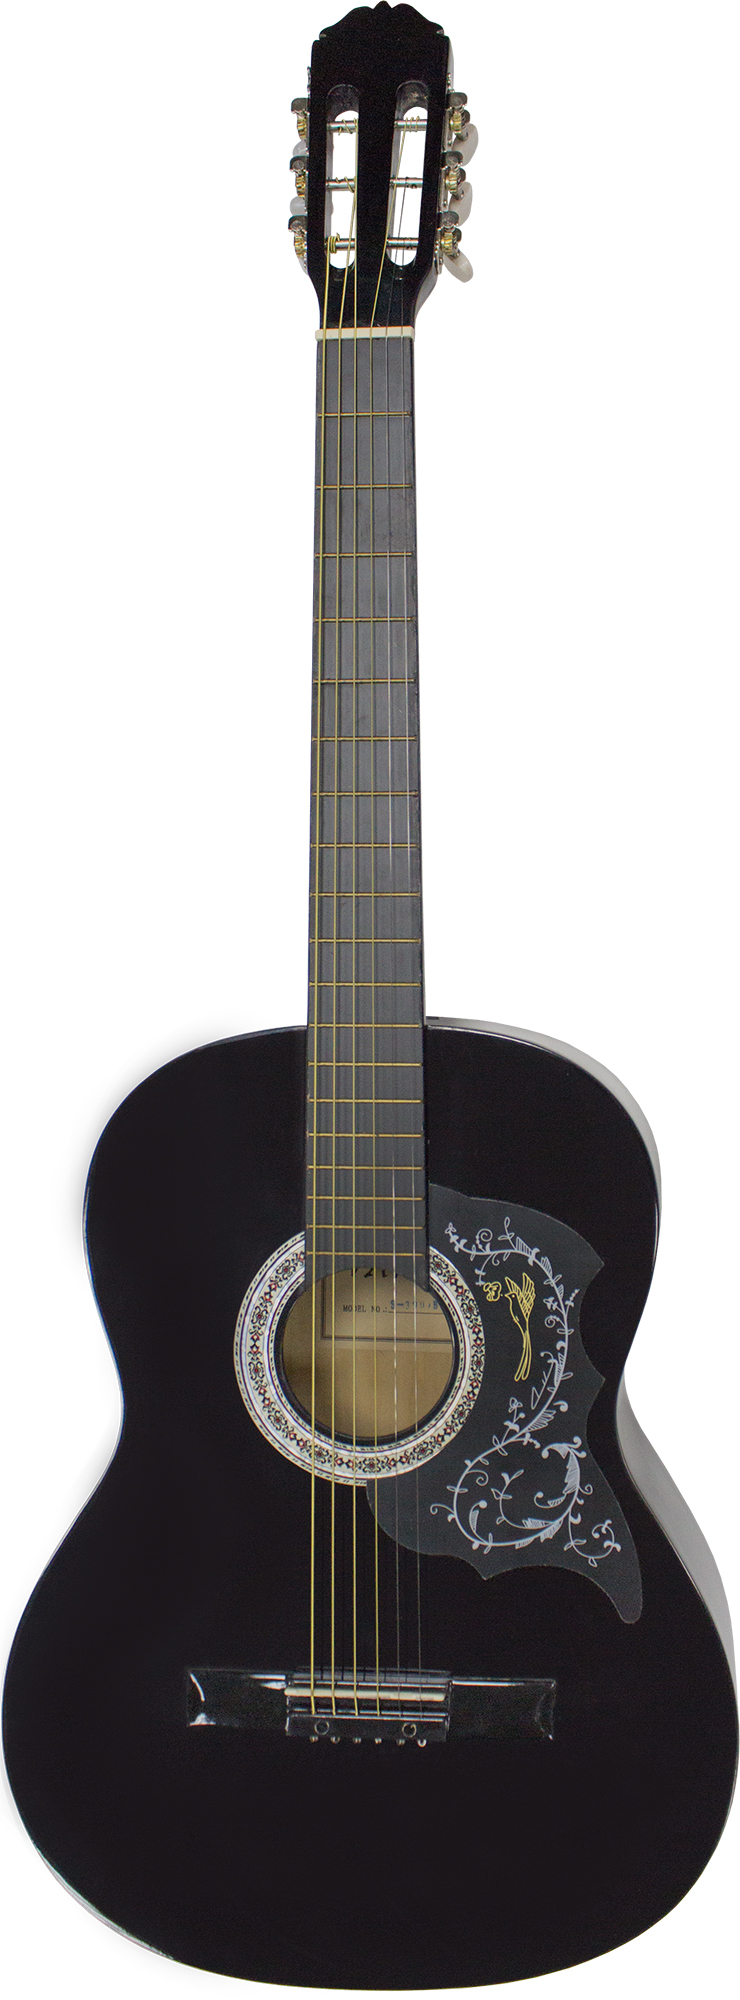 Акустическая гитара Varna S-390 BLK